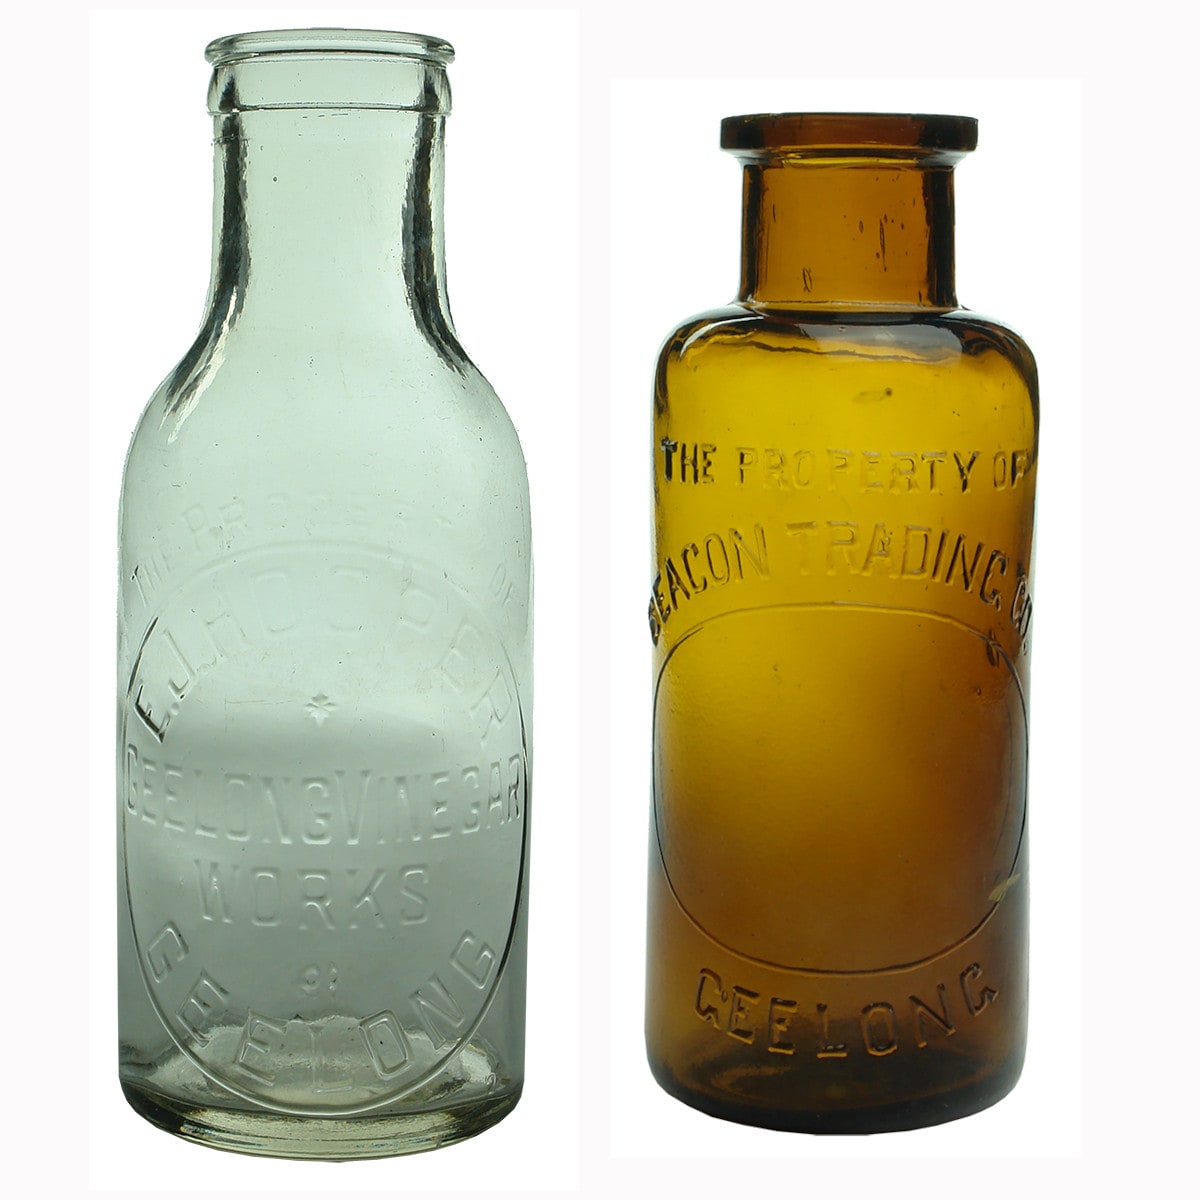 Pair of Geelong jars: Hooper Geelong Vinegar Works and Beacon Trading Co.